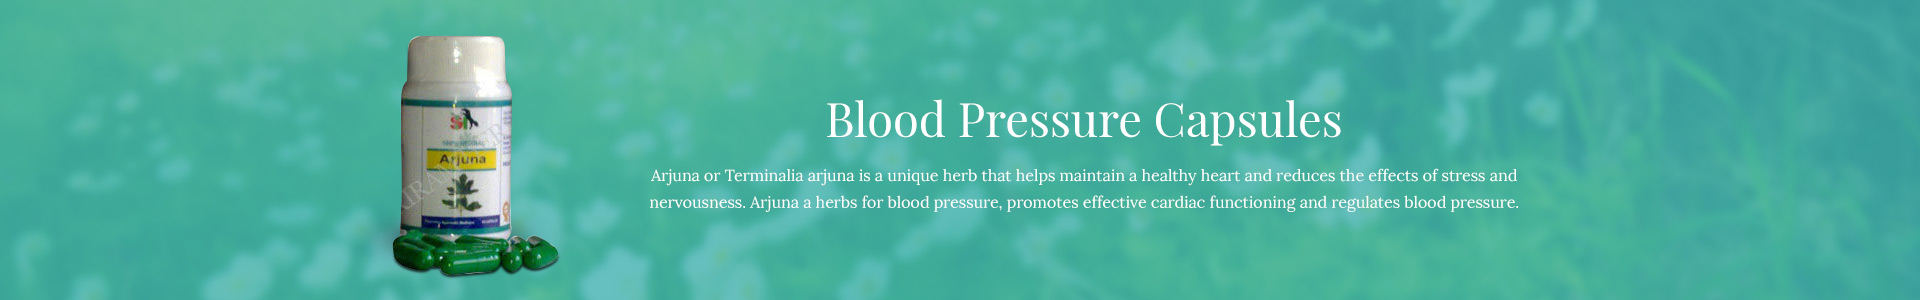 blood-pressure-capsules